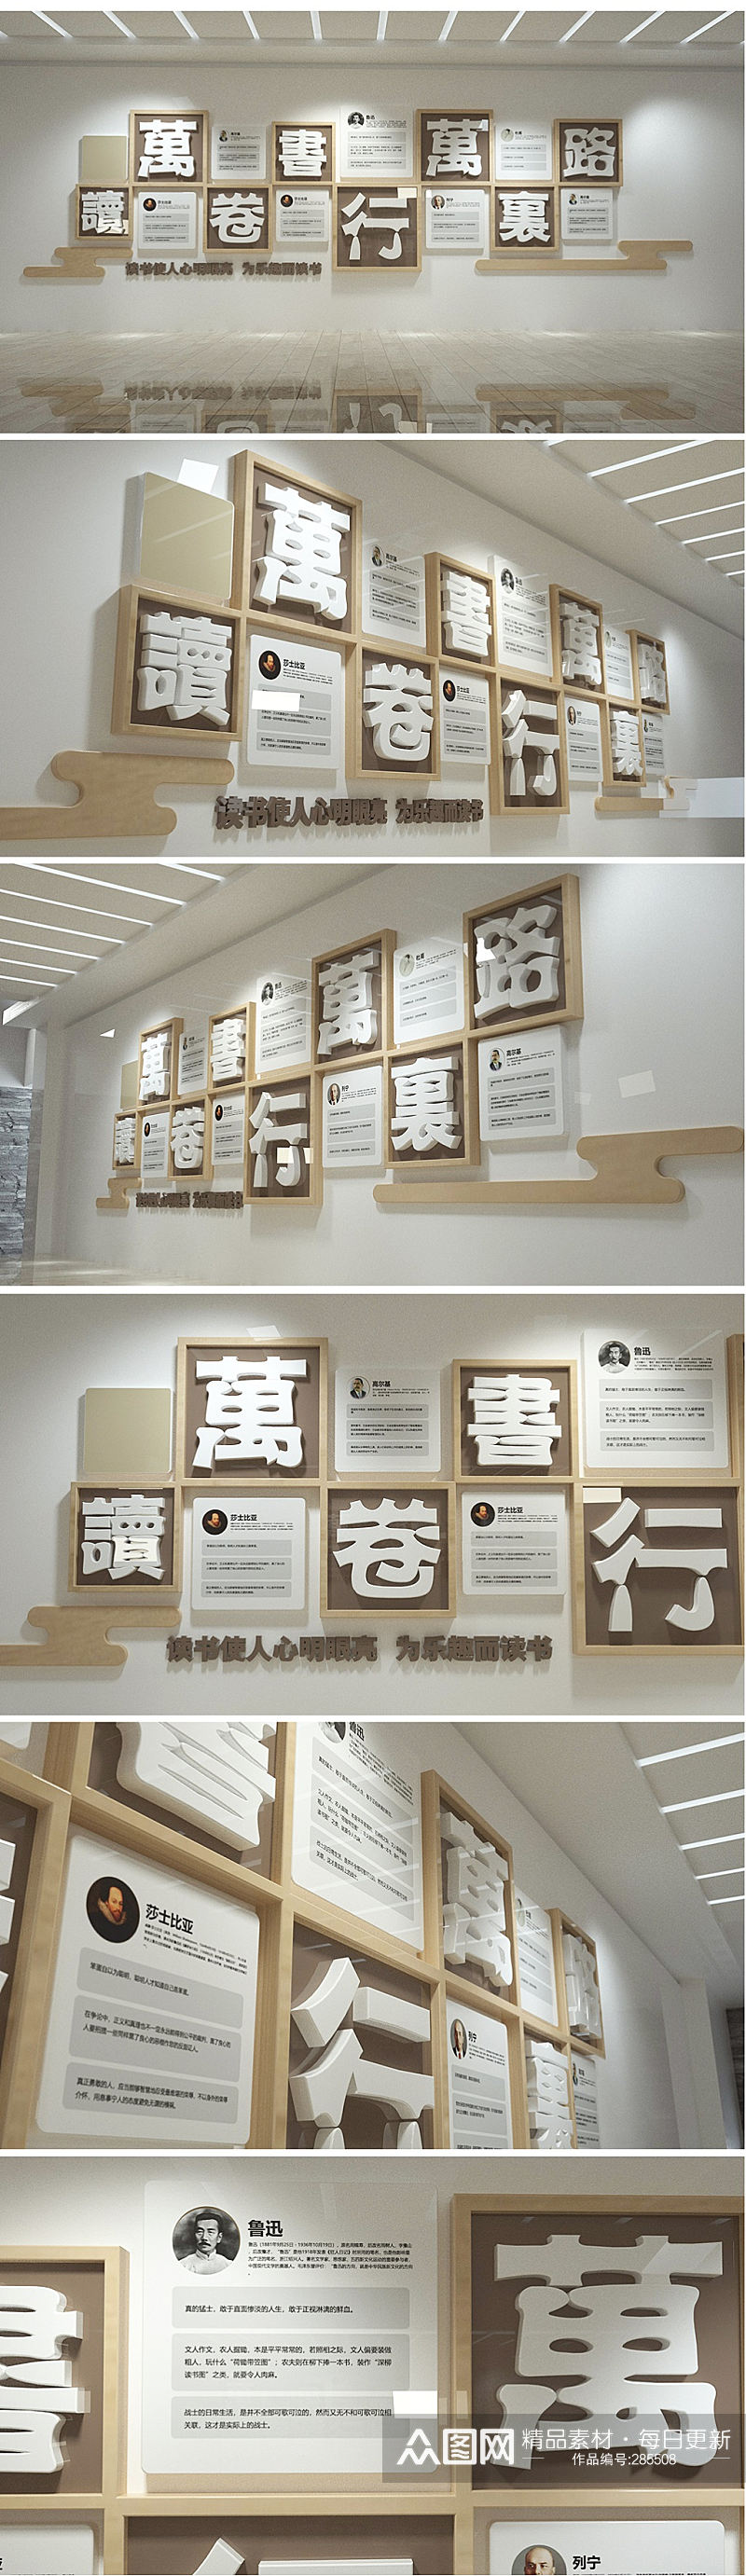 创意中式校园学校图书馆文化墙素材